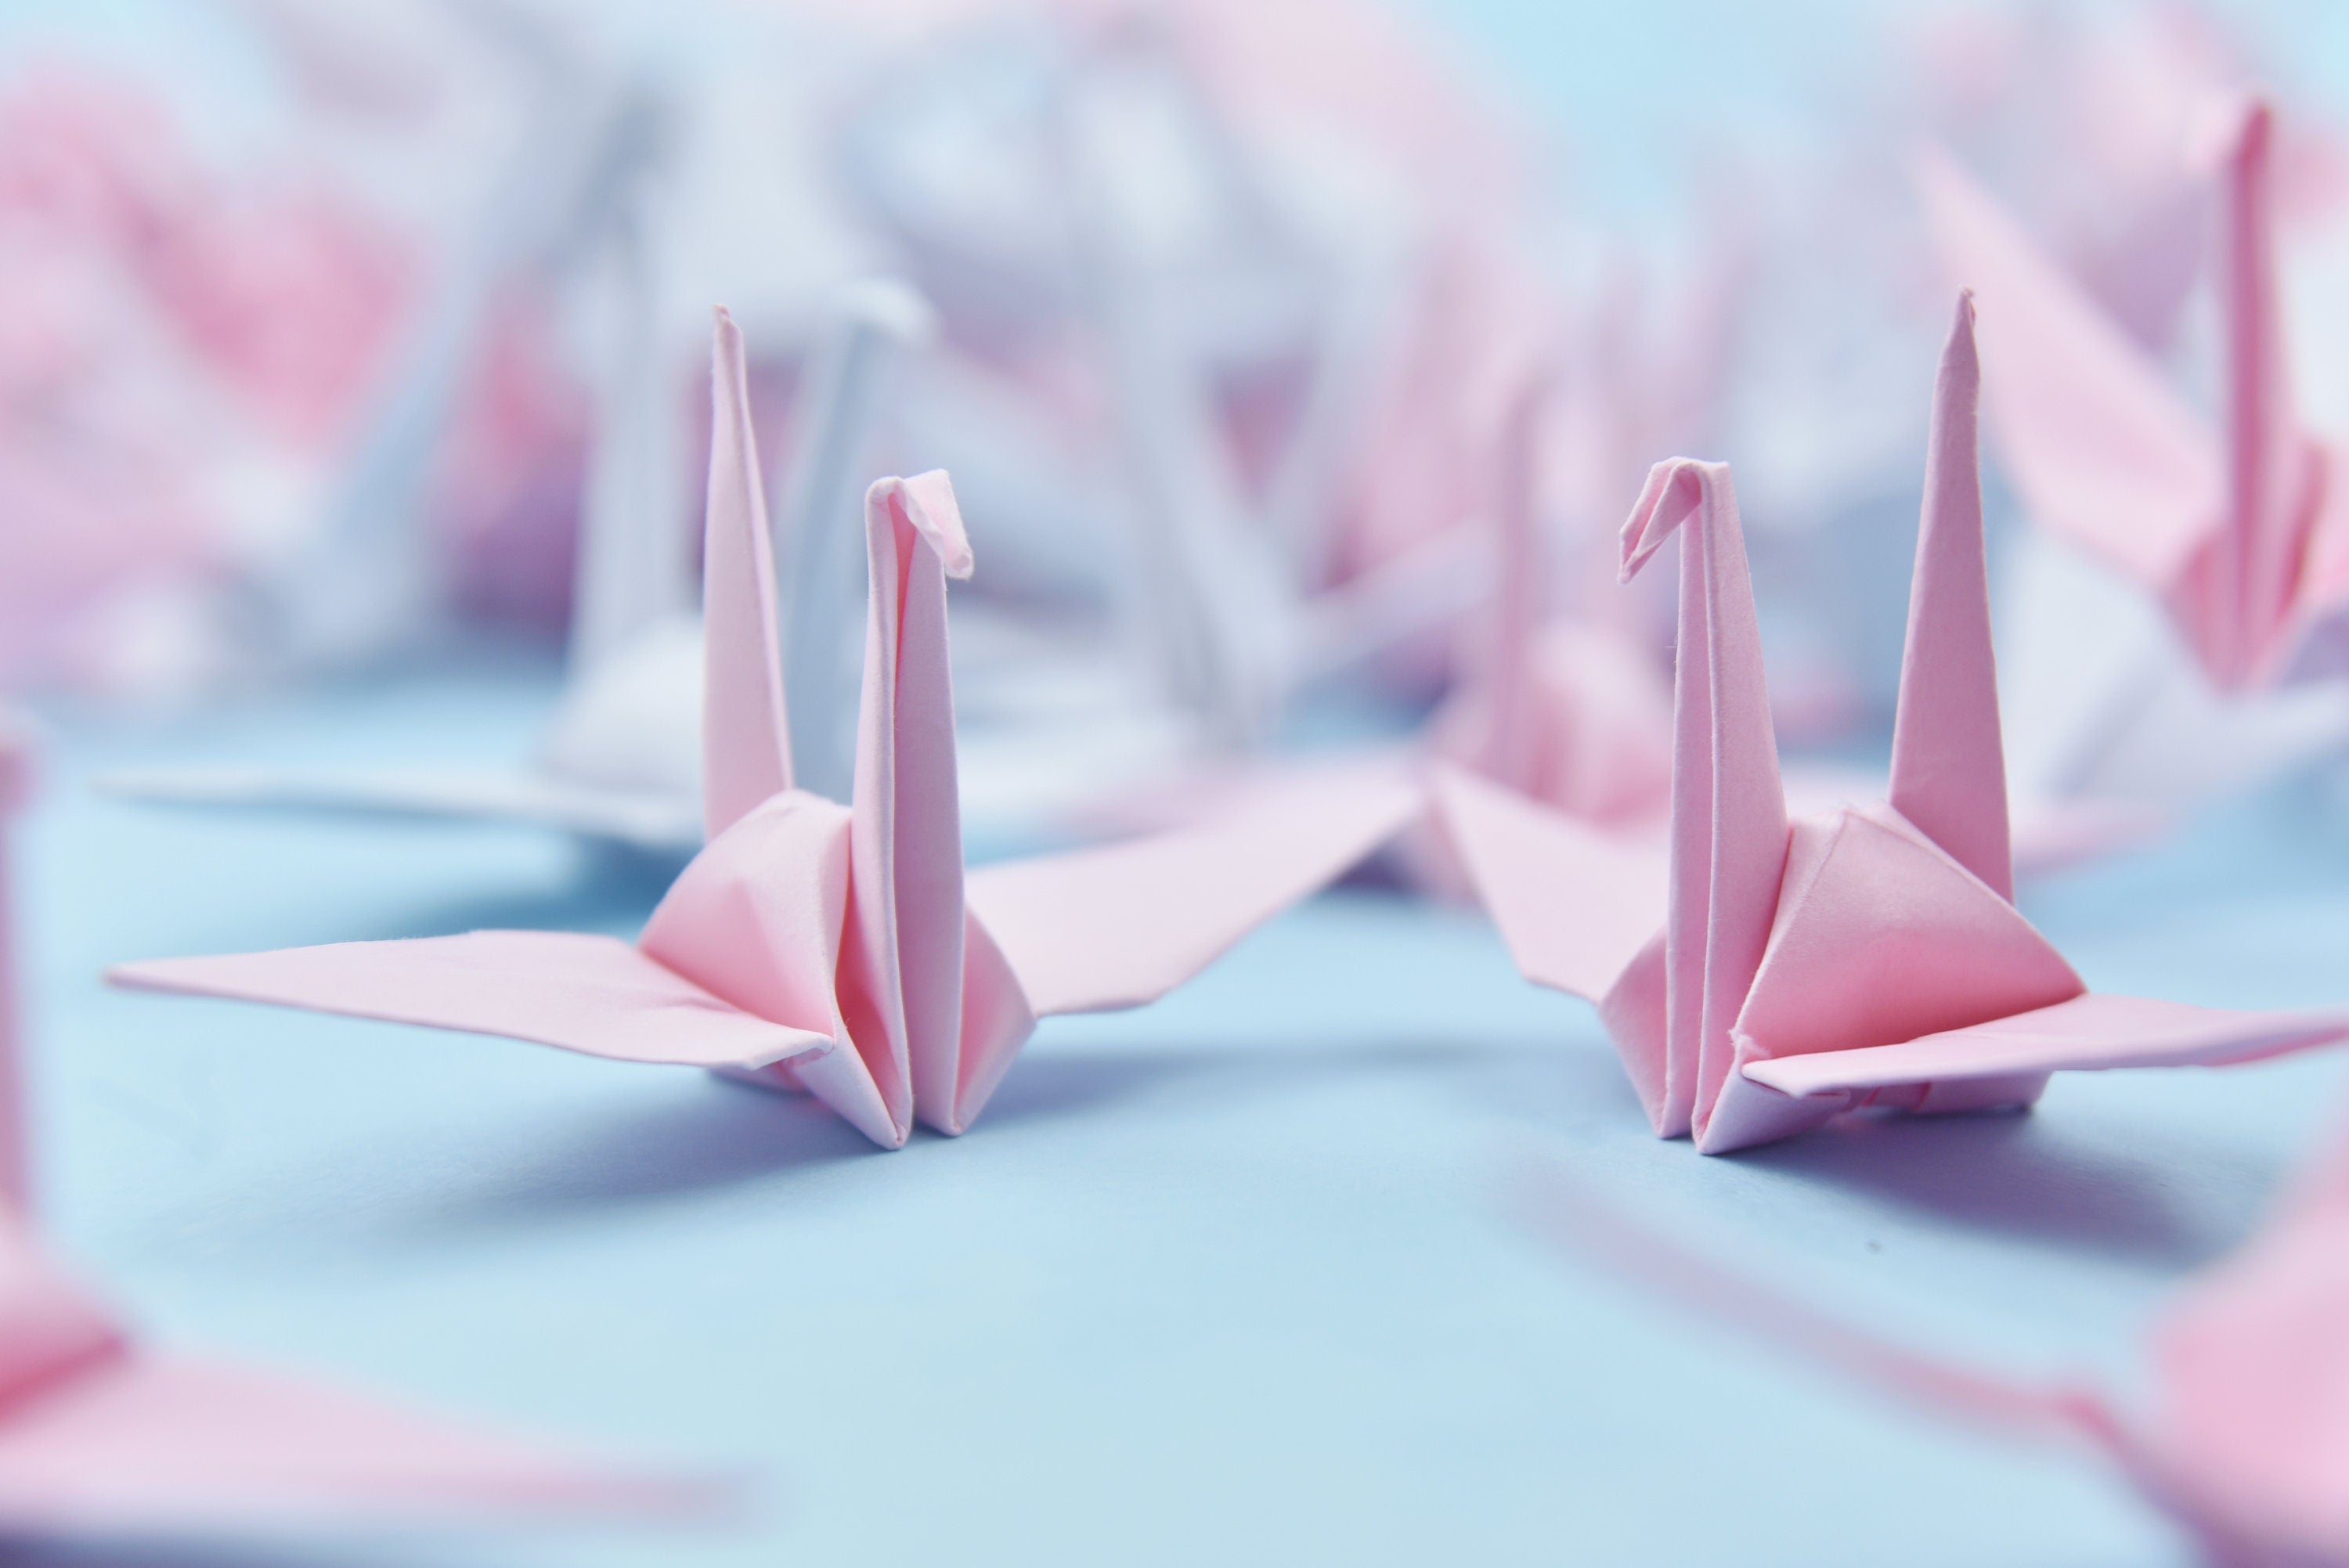 1000 gru di carta origami - tonalità rosa - realizzate da 7,5 cm (3x3 pollici) - per decorazioni di nozze, regali di anniversario, gru origami